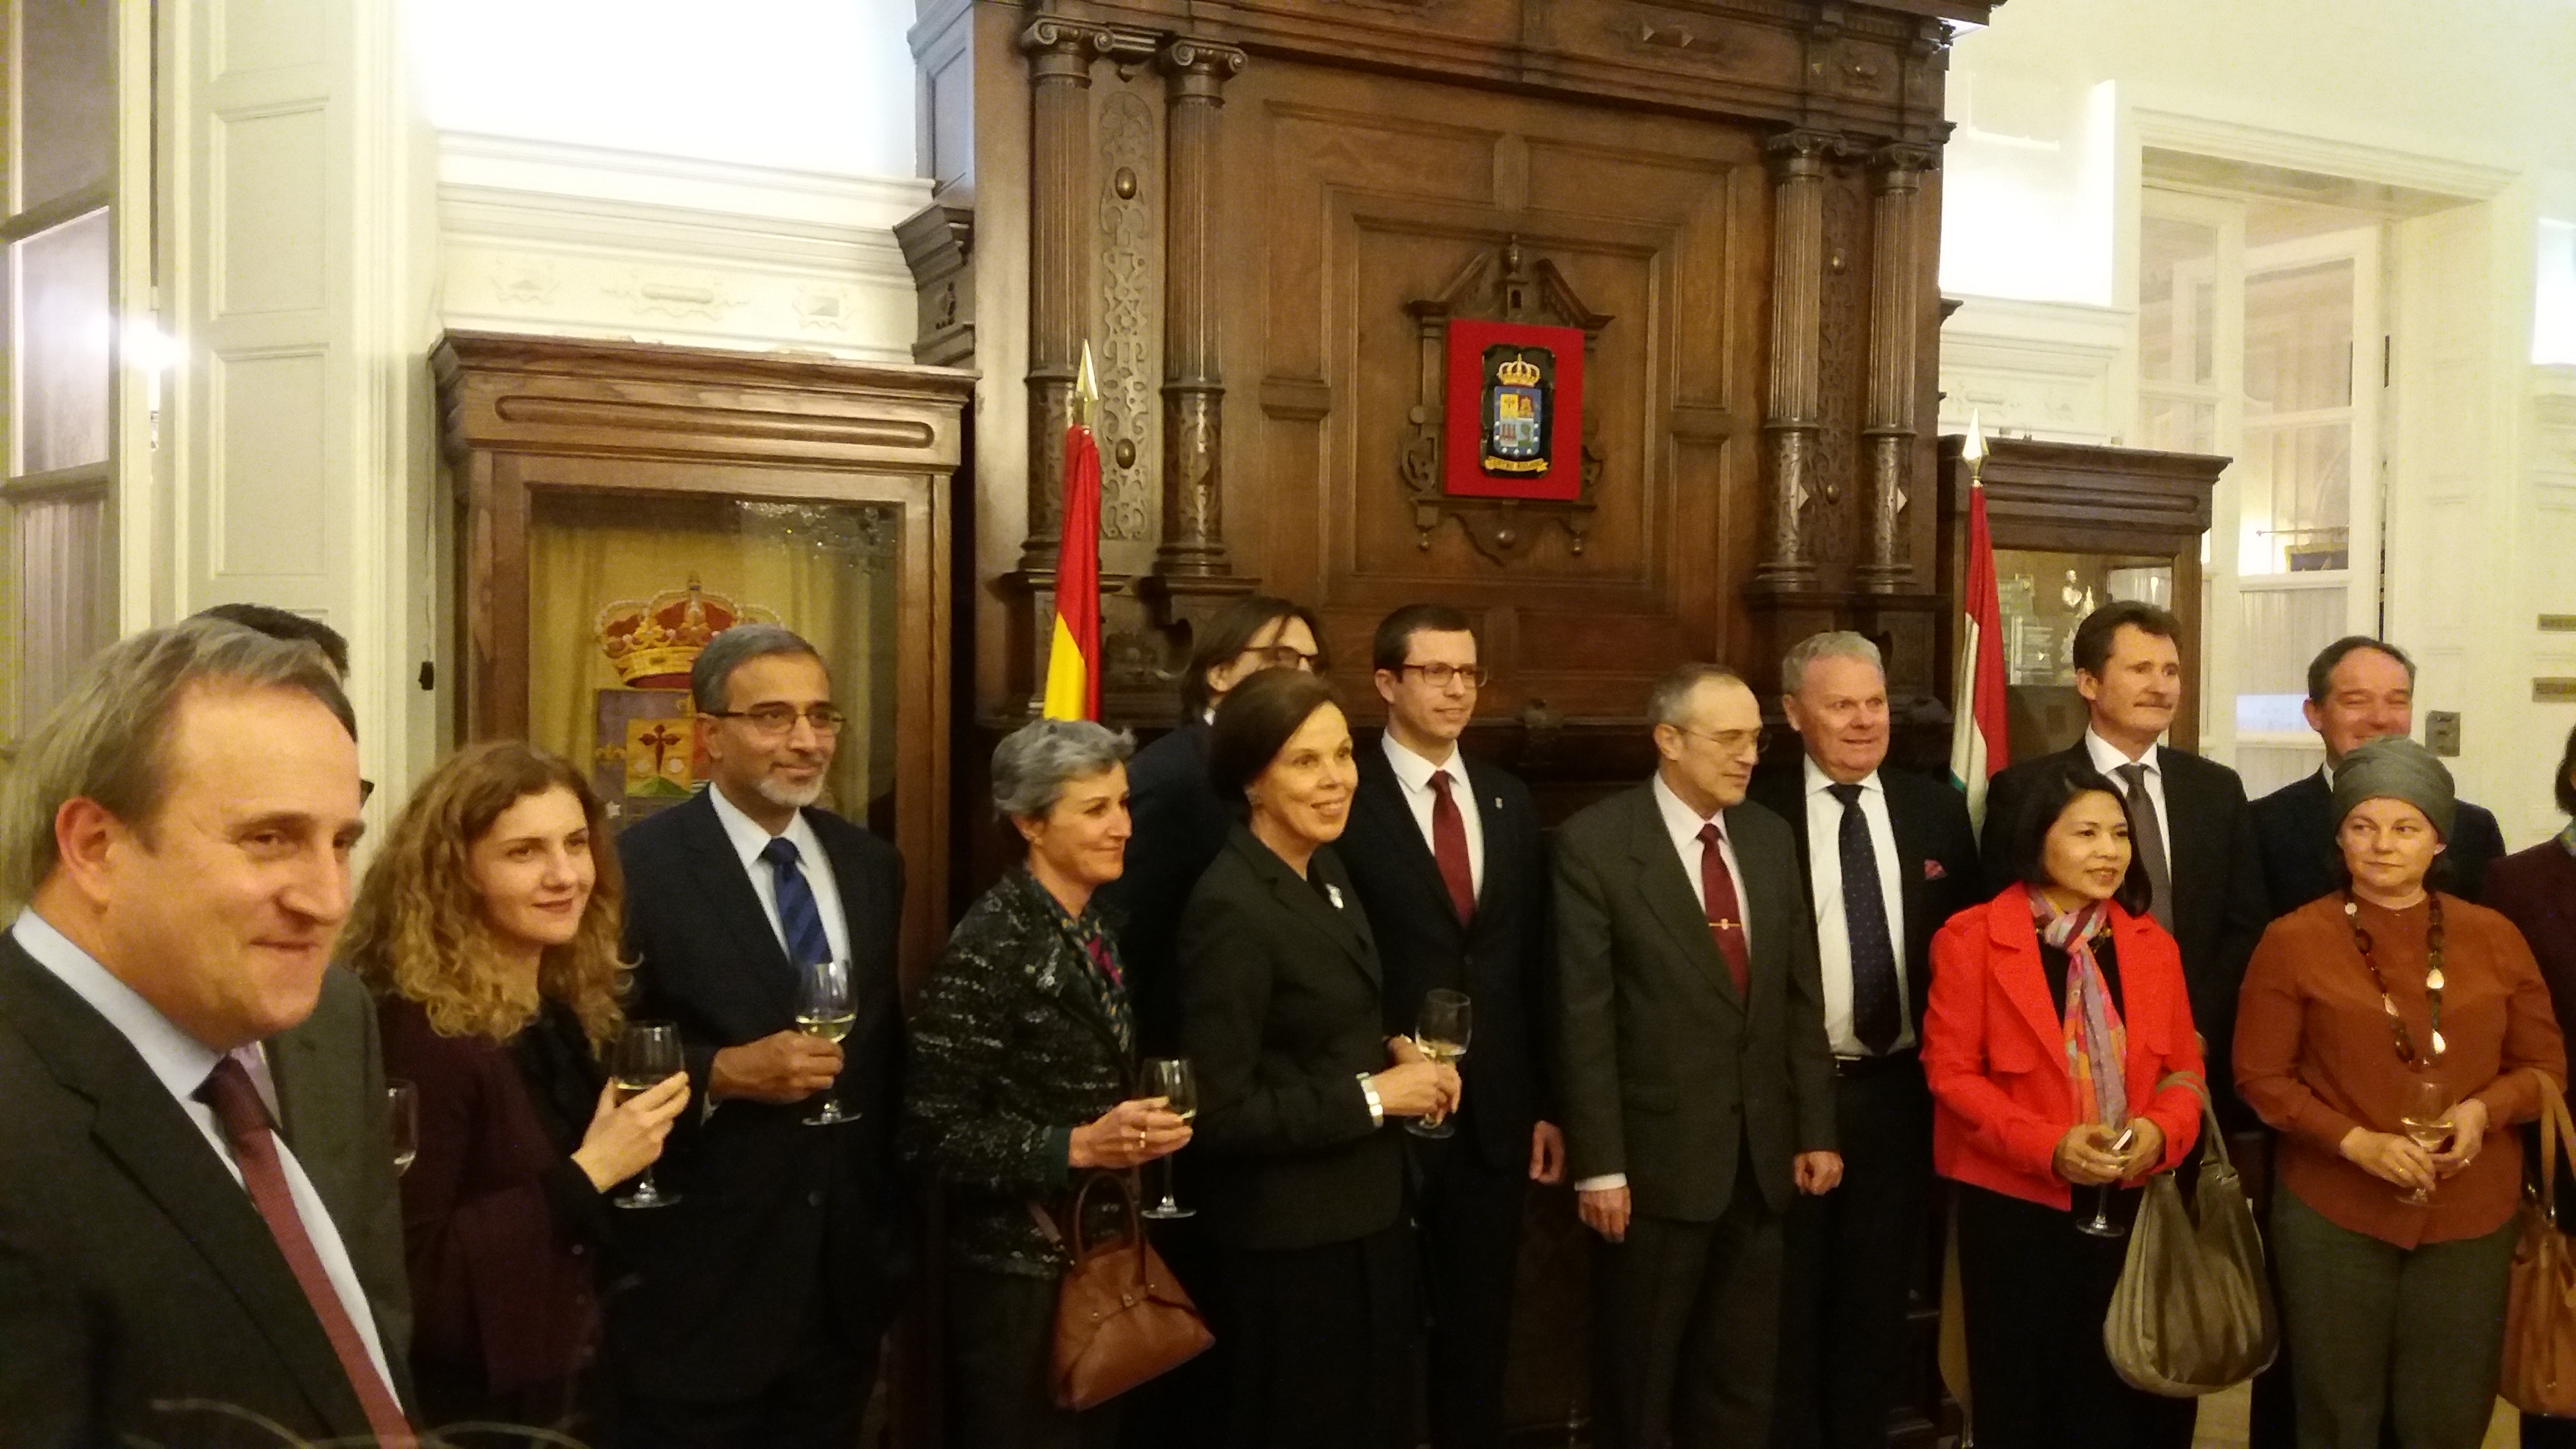 El Centro Riojano de Madrid celebra la Segunda Cata de los Embajadores